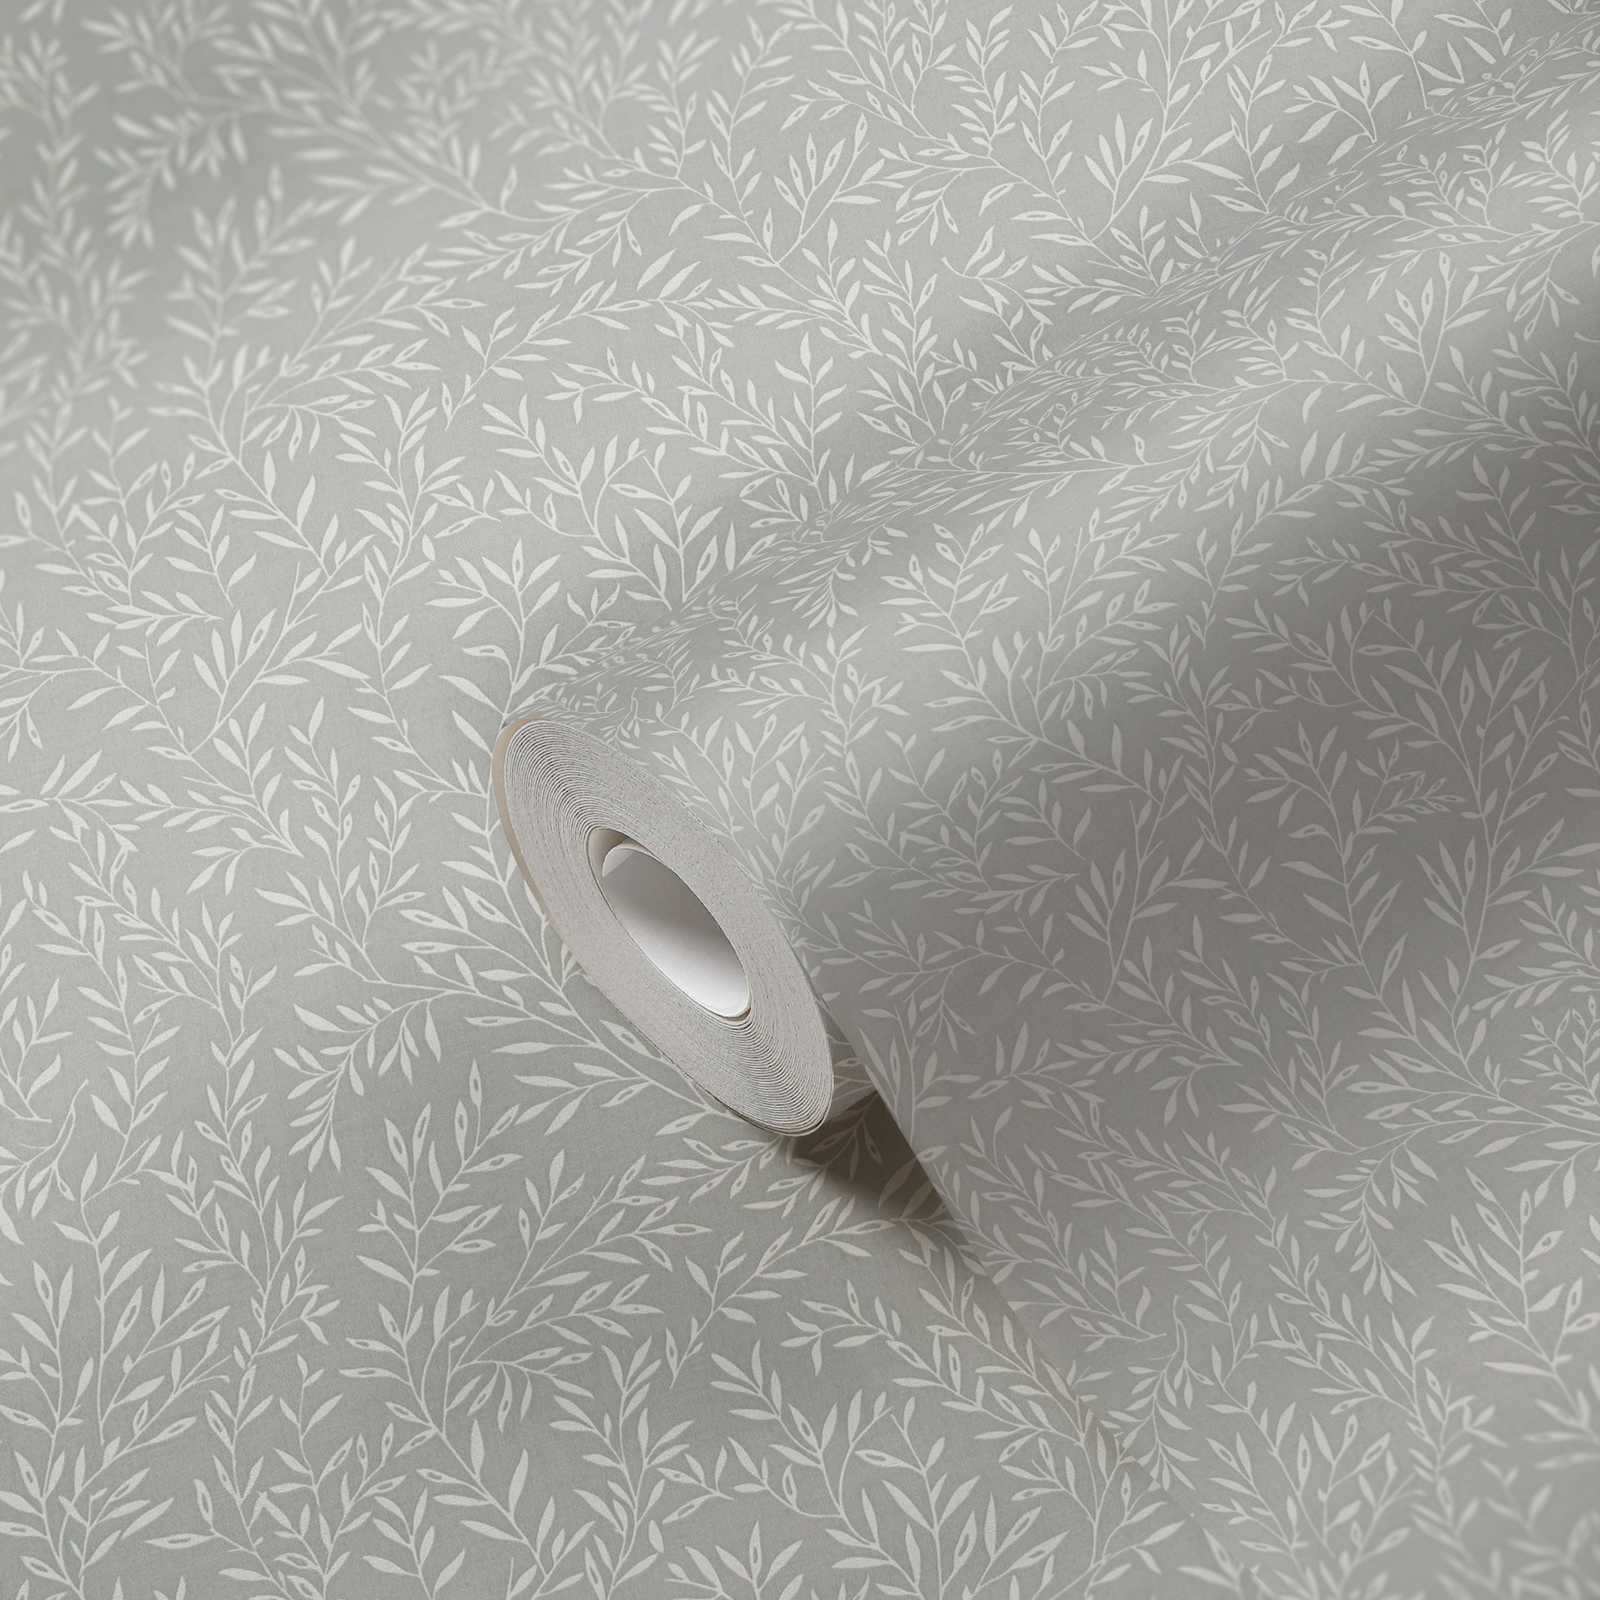             Papel pintado con zarcillos de hojas en estilo campestre - gris, blanco
        